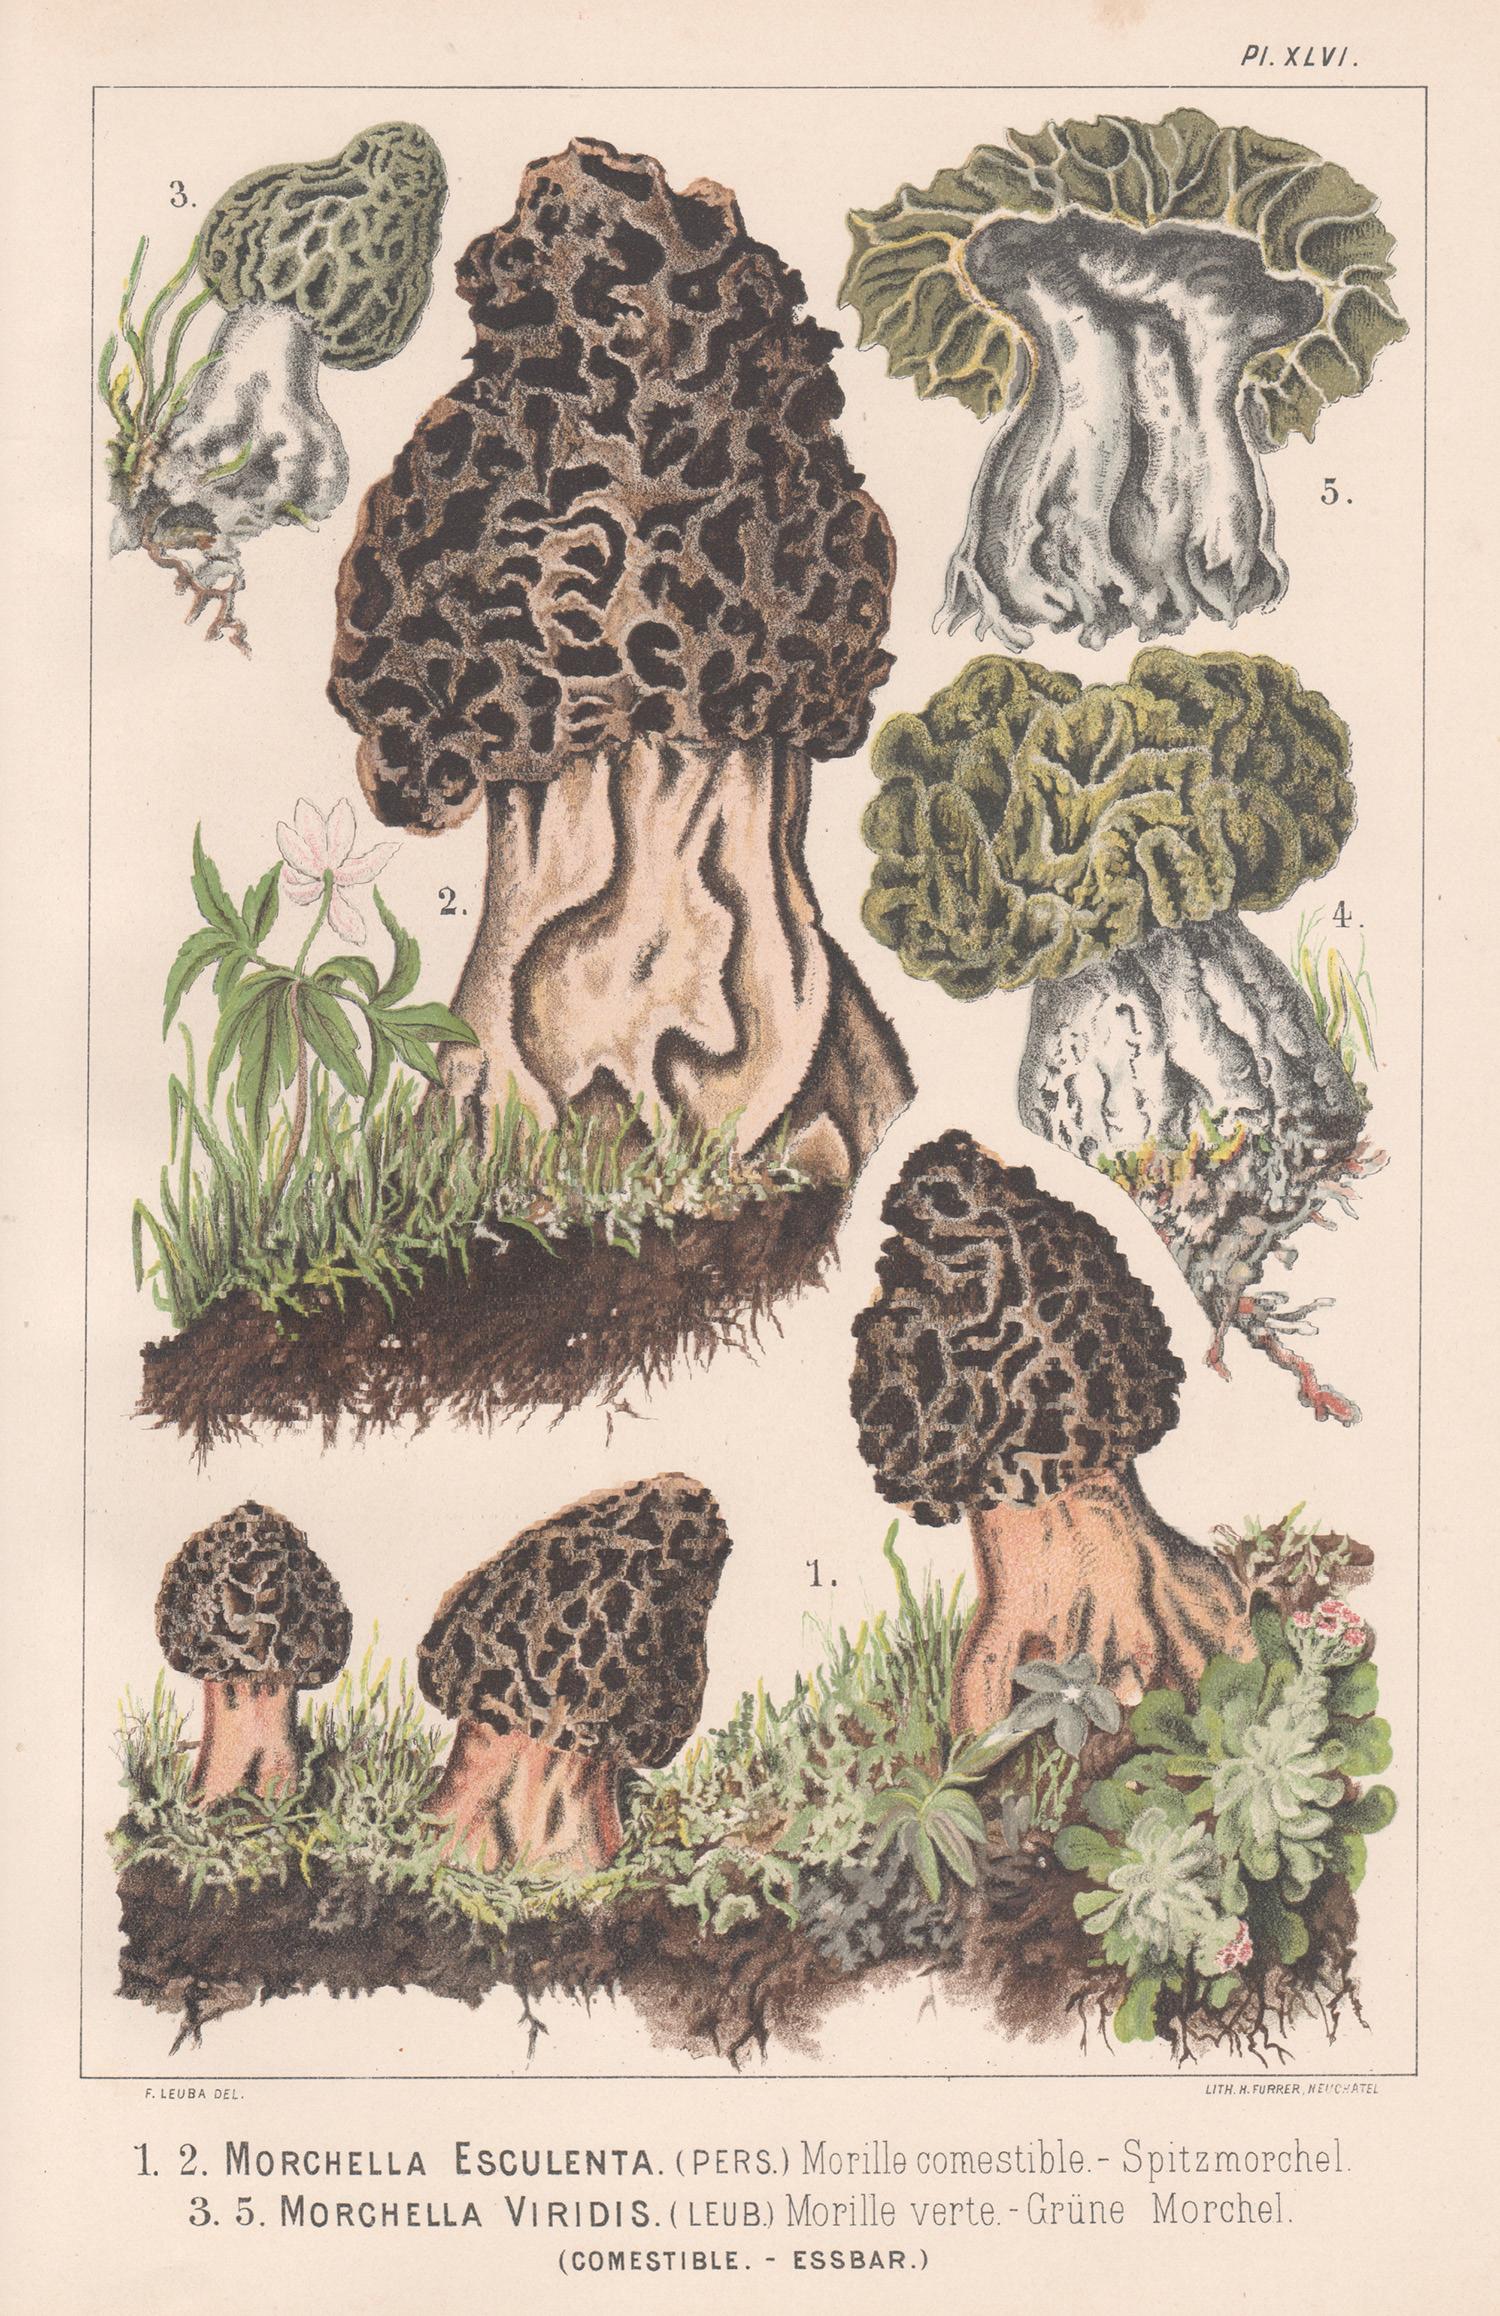 H Furrer after Fritz Leuba Still-Life Print - Morchella Esculenta, Leuba antique mushroom morel fungi chromolithograph print